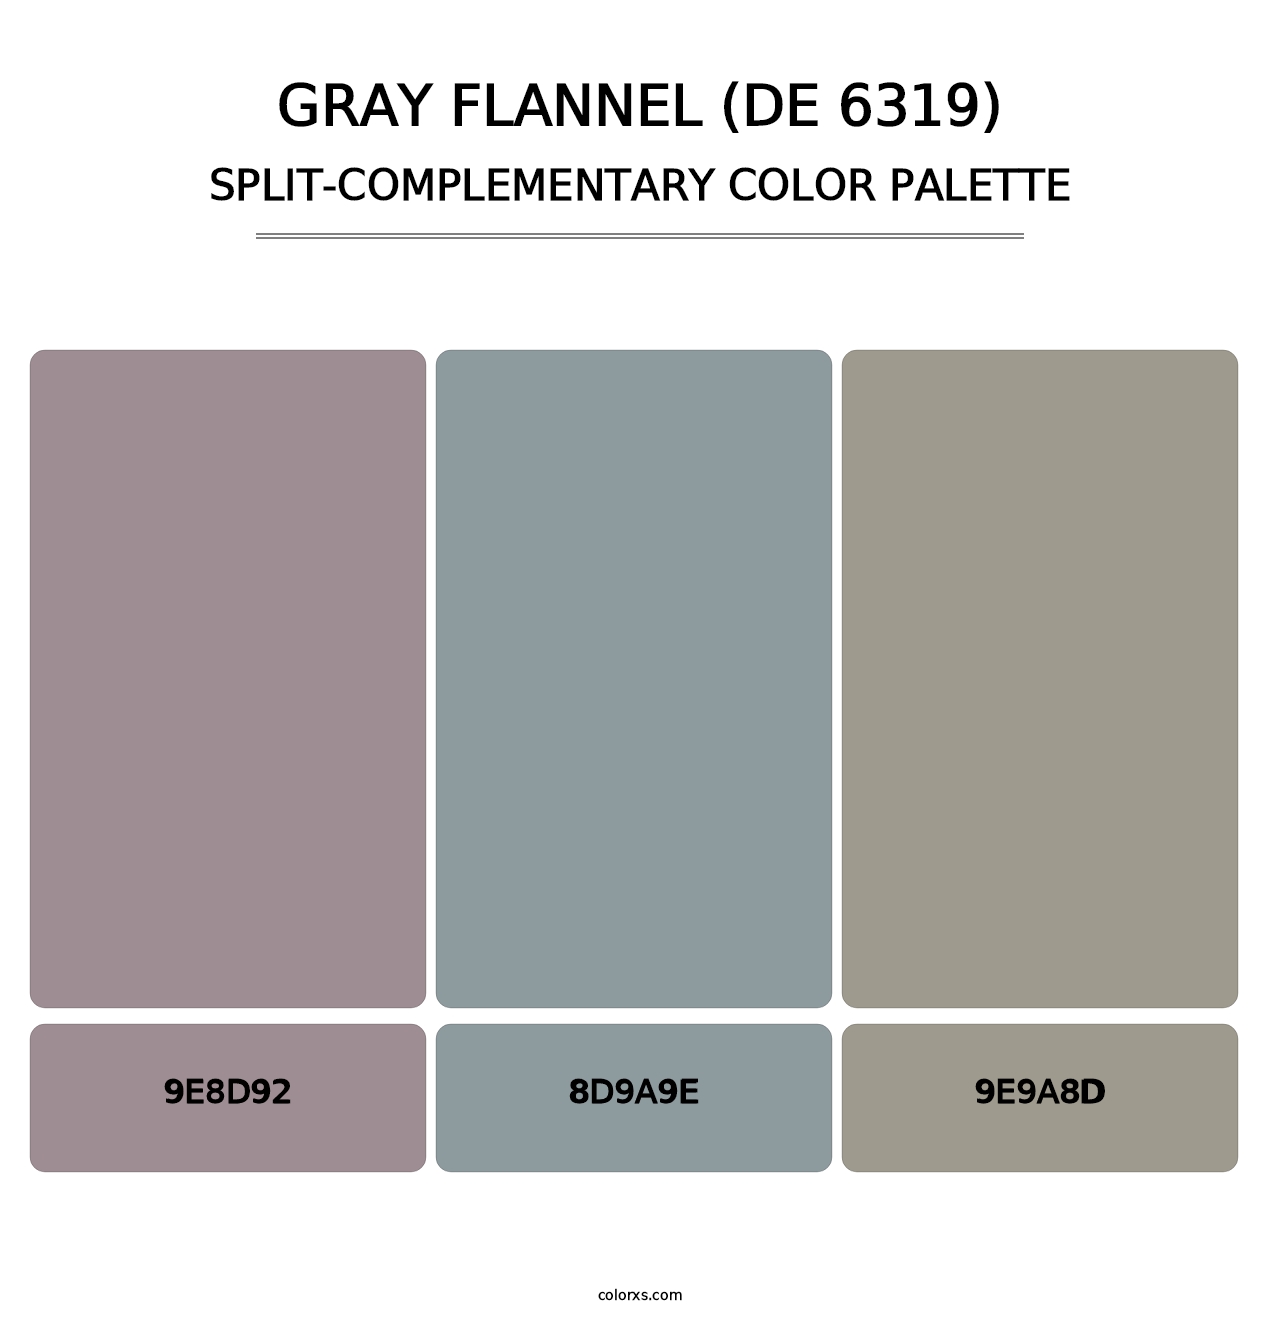 Gray Flannel (DE 6319) - Split-Complementary Color Palette